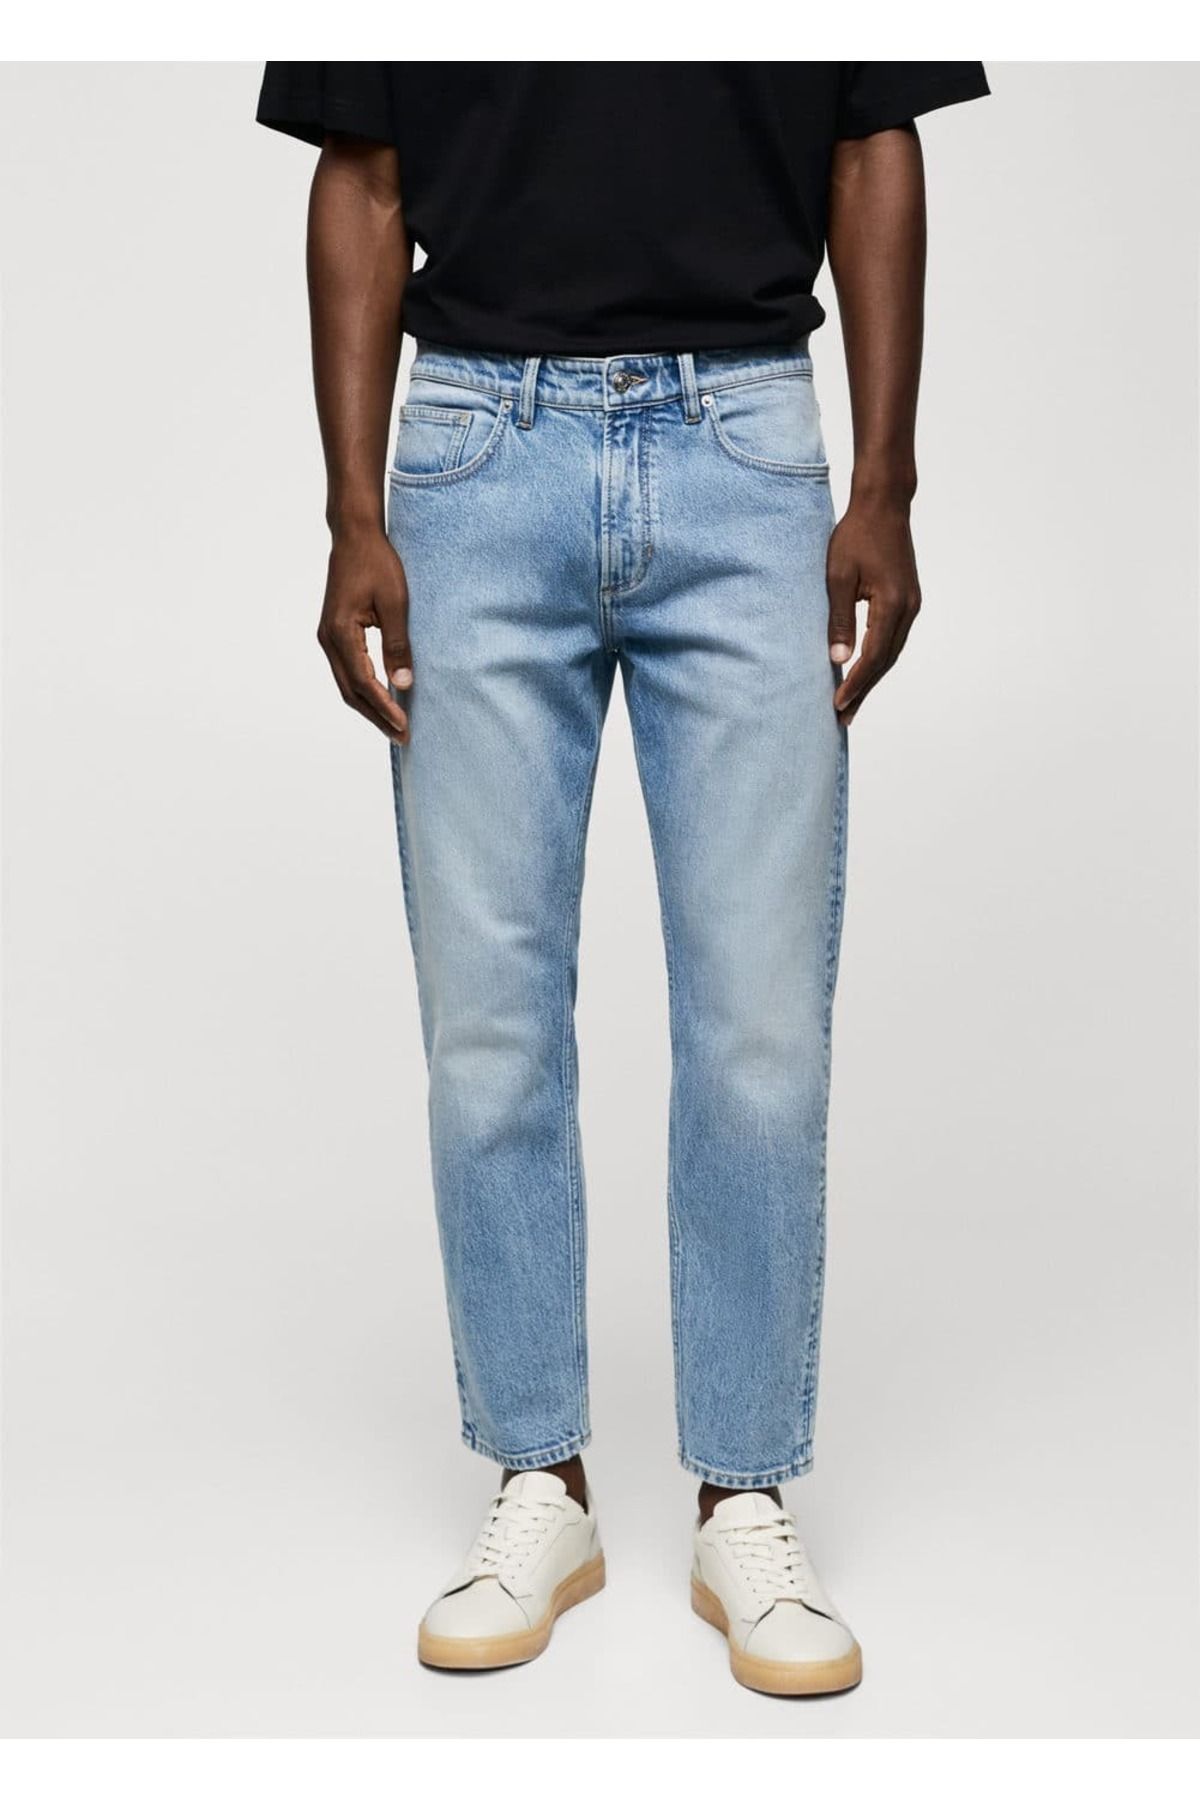 MANGO Man Ben model tapered cropped jean